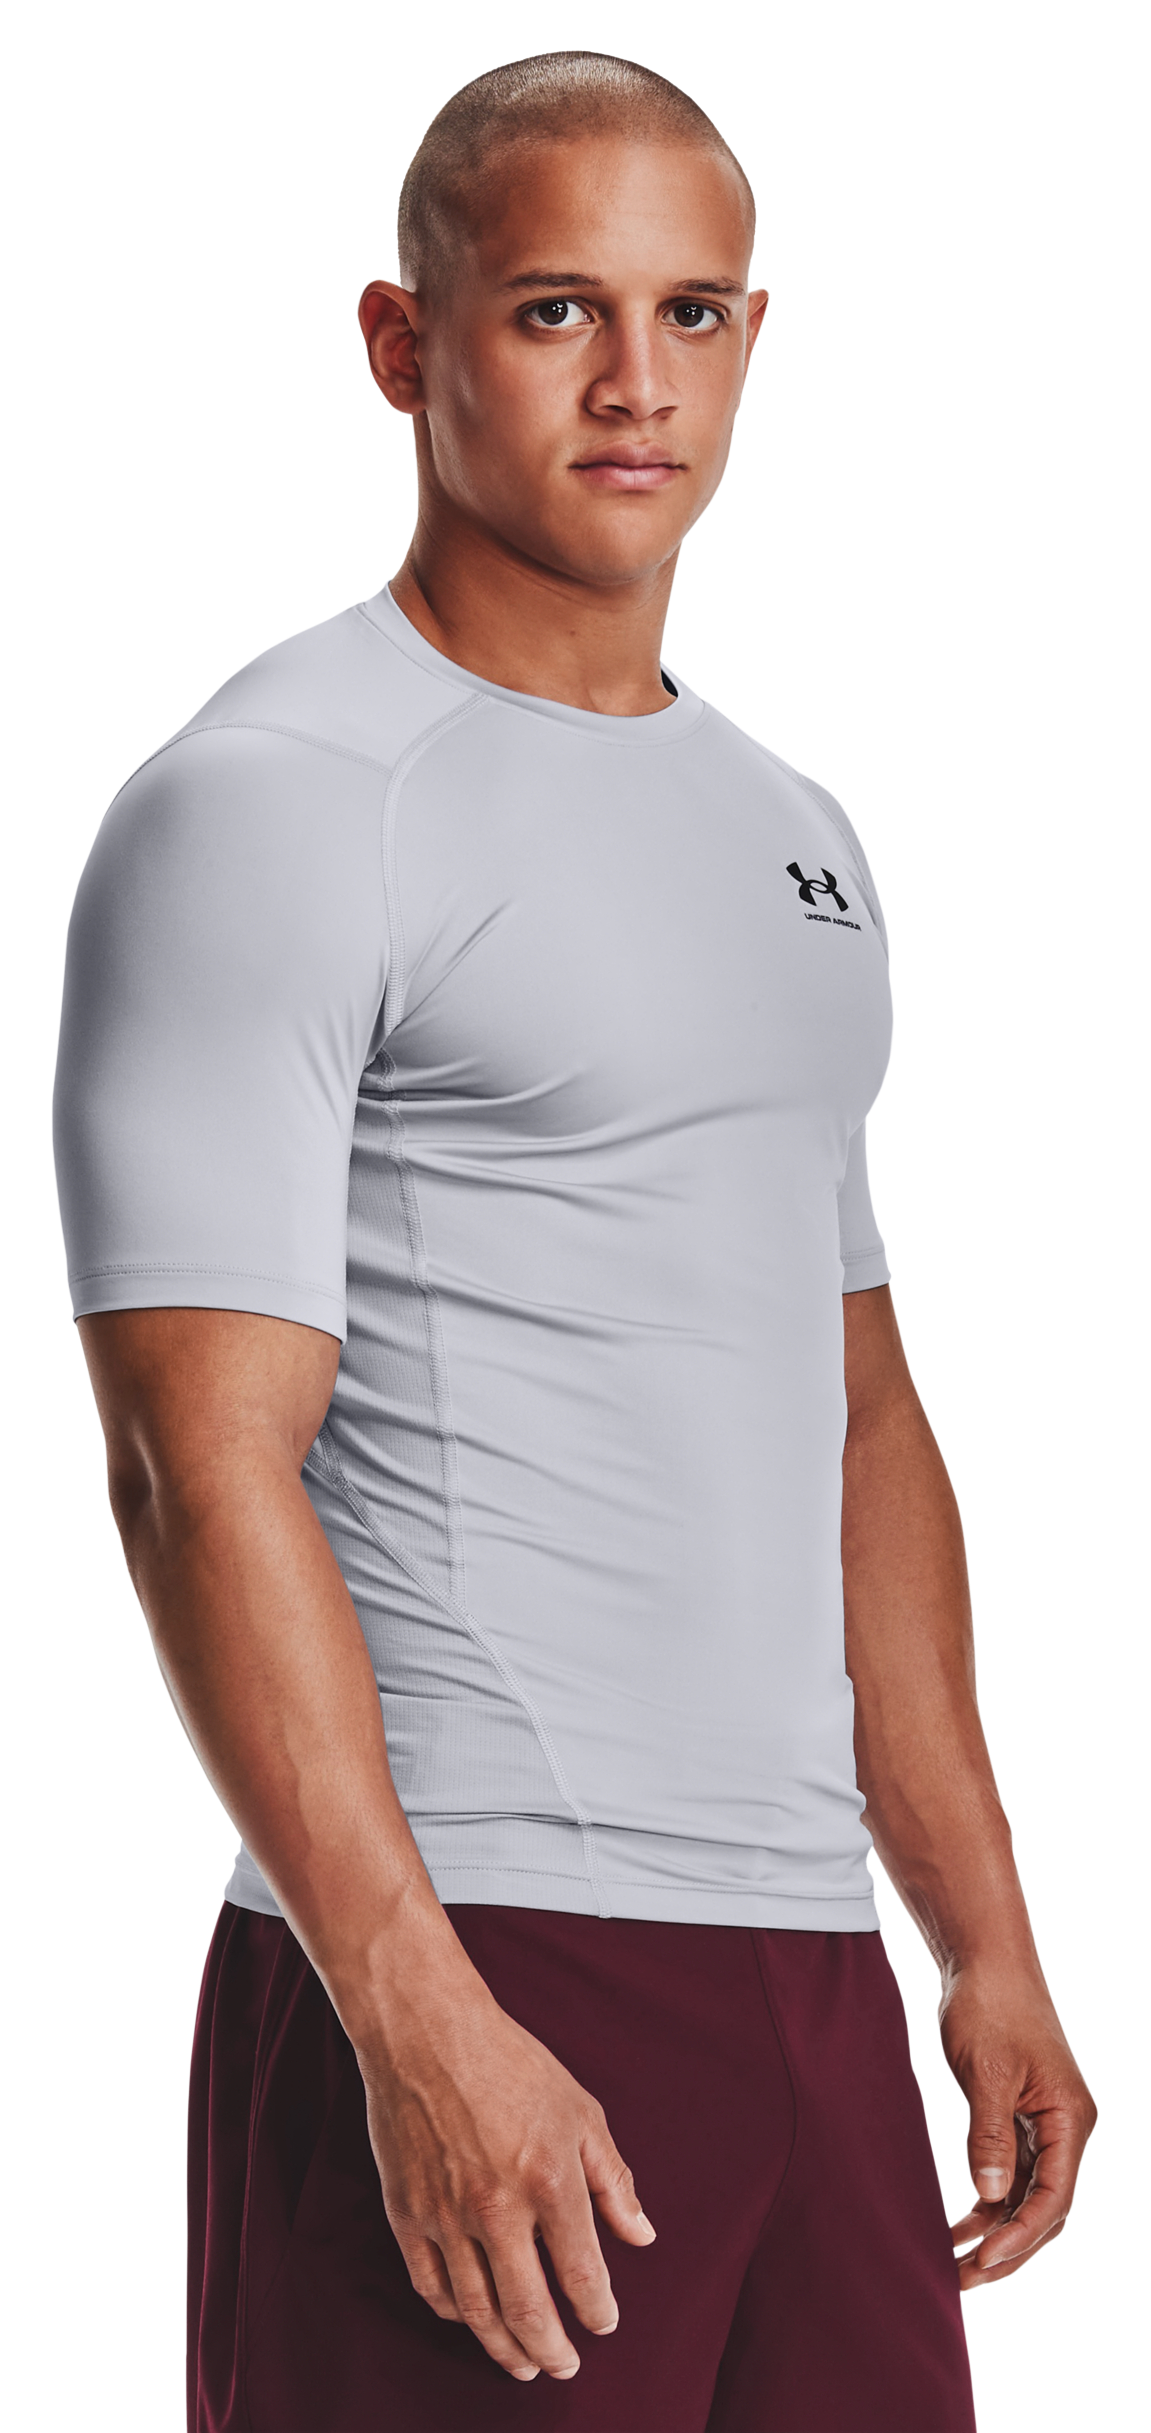 Under Armour HeatGear Short-Sleeve T-Shirt for Men - Mod Gray/Black - XL